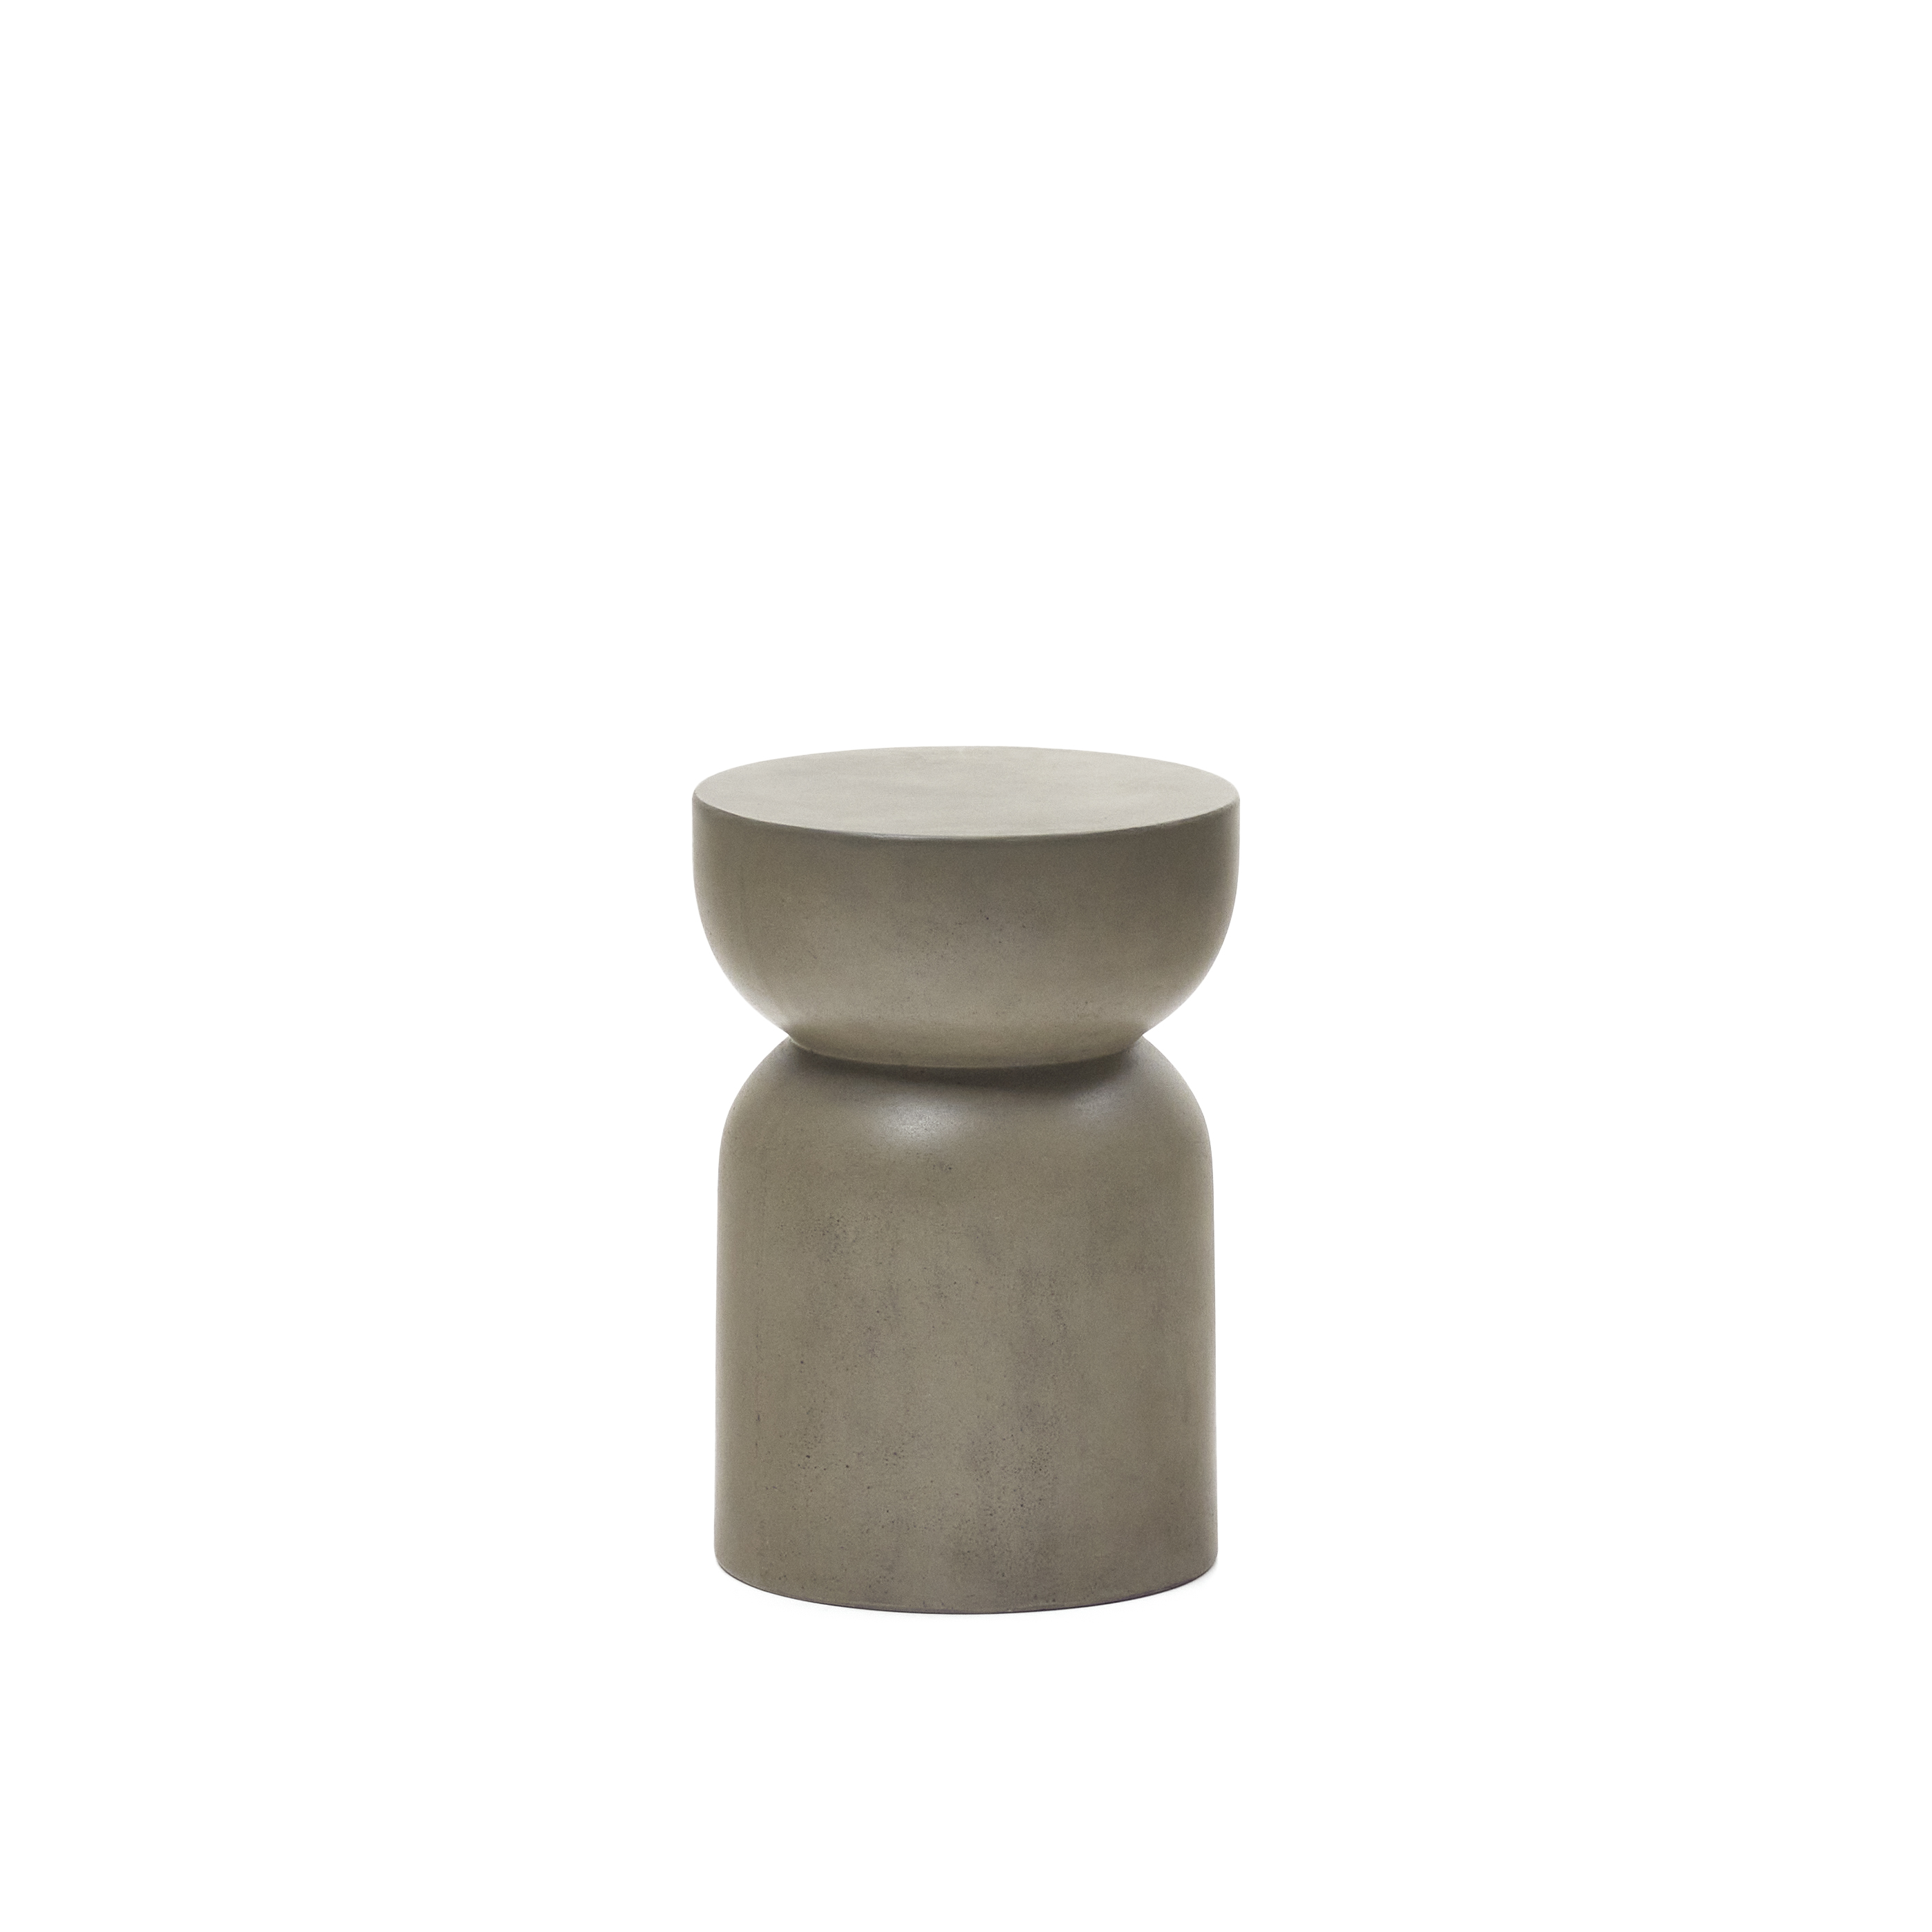 LAFORMA Garbet sidobord, för in- och utvändigt, rund - grå fibercement (Ø32)